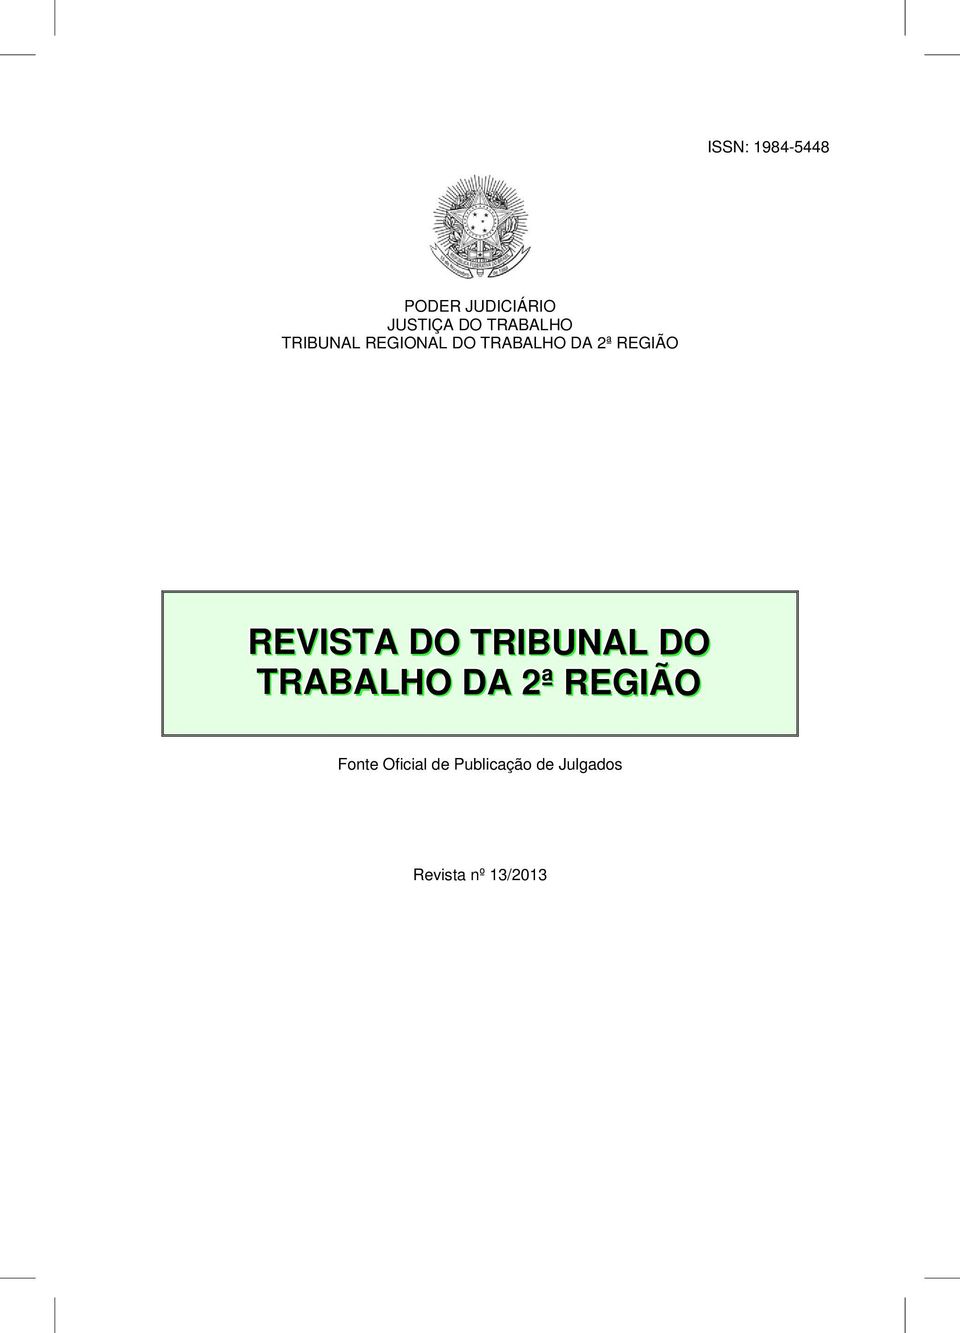 REGIÃO REVISTA DO TRIBUNAL DO TRABALHO DA 2ª